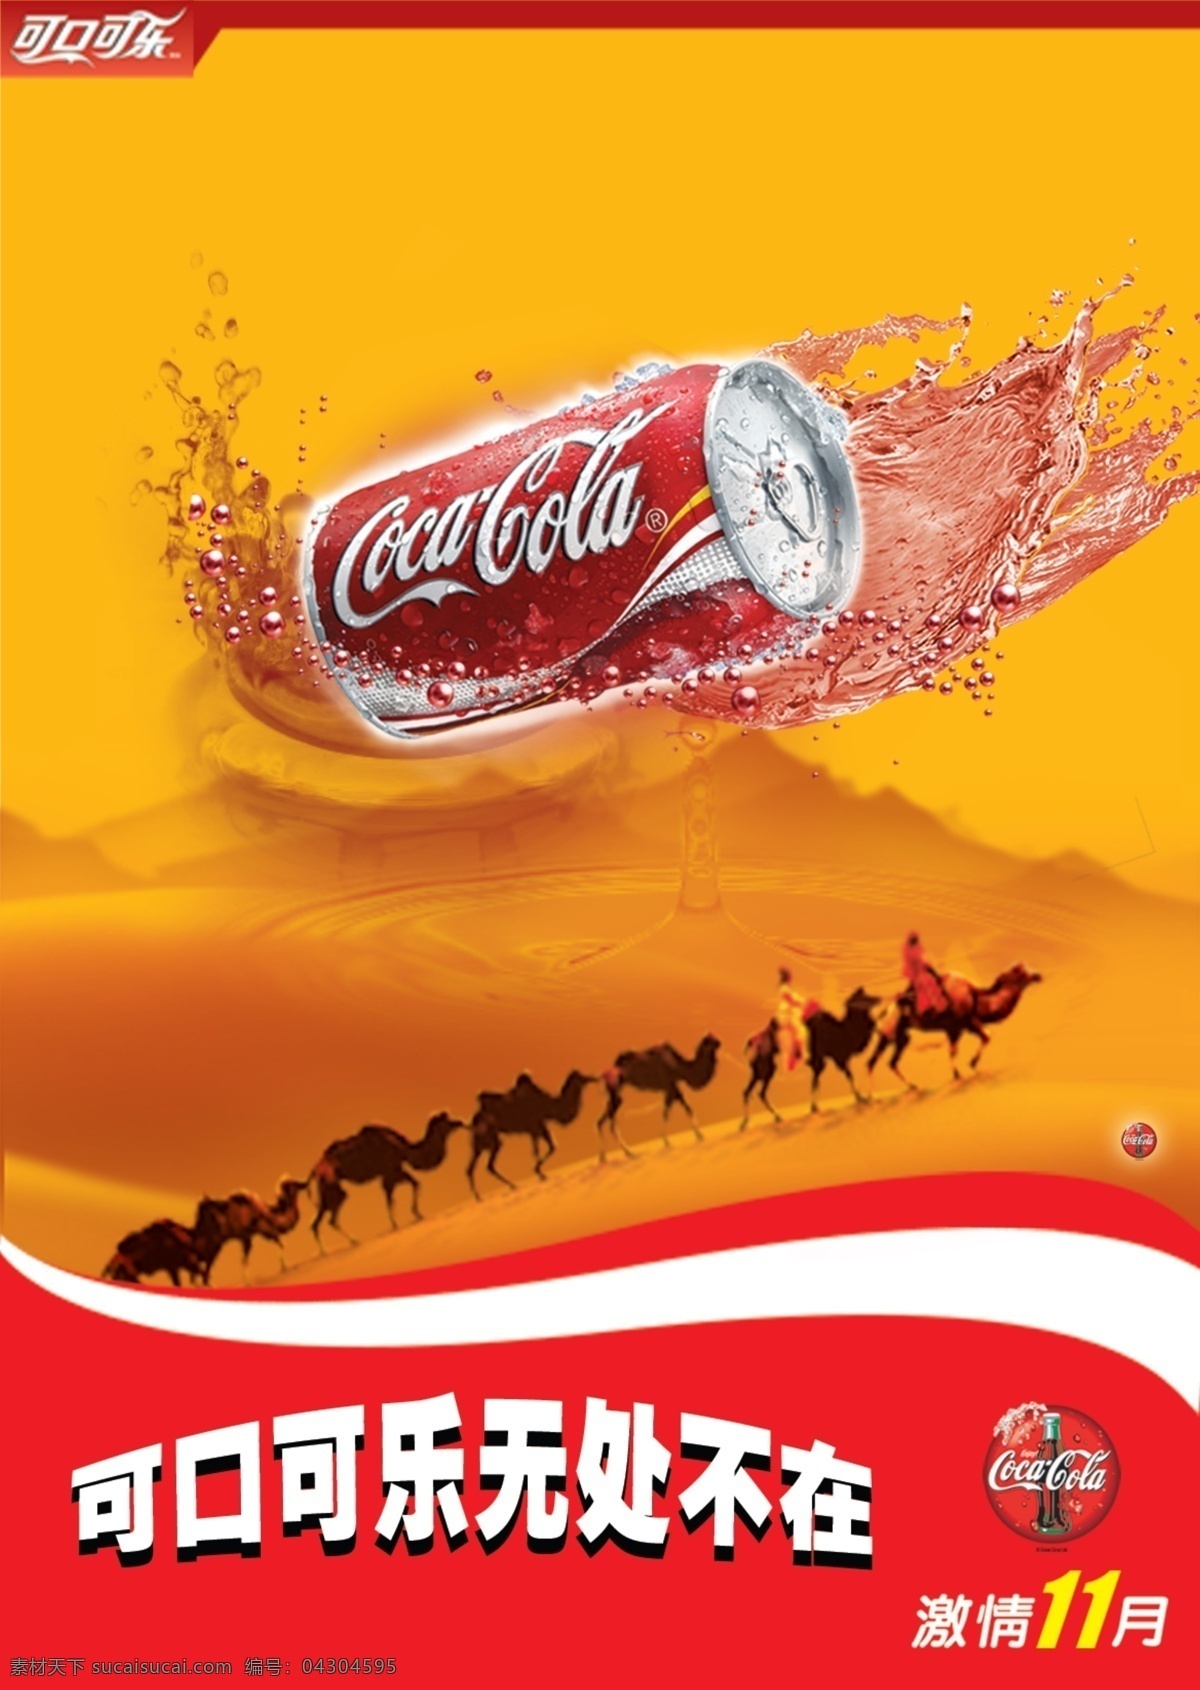 可口可乐广告 可口可乐 标志 沙漠 骆驼 水珠 水滴 暖色 广告设计模板 源文件